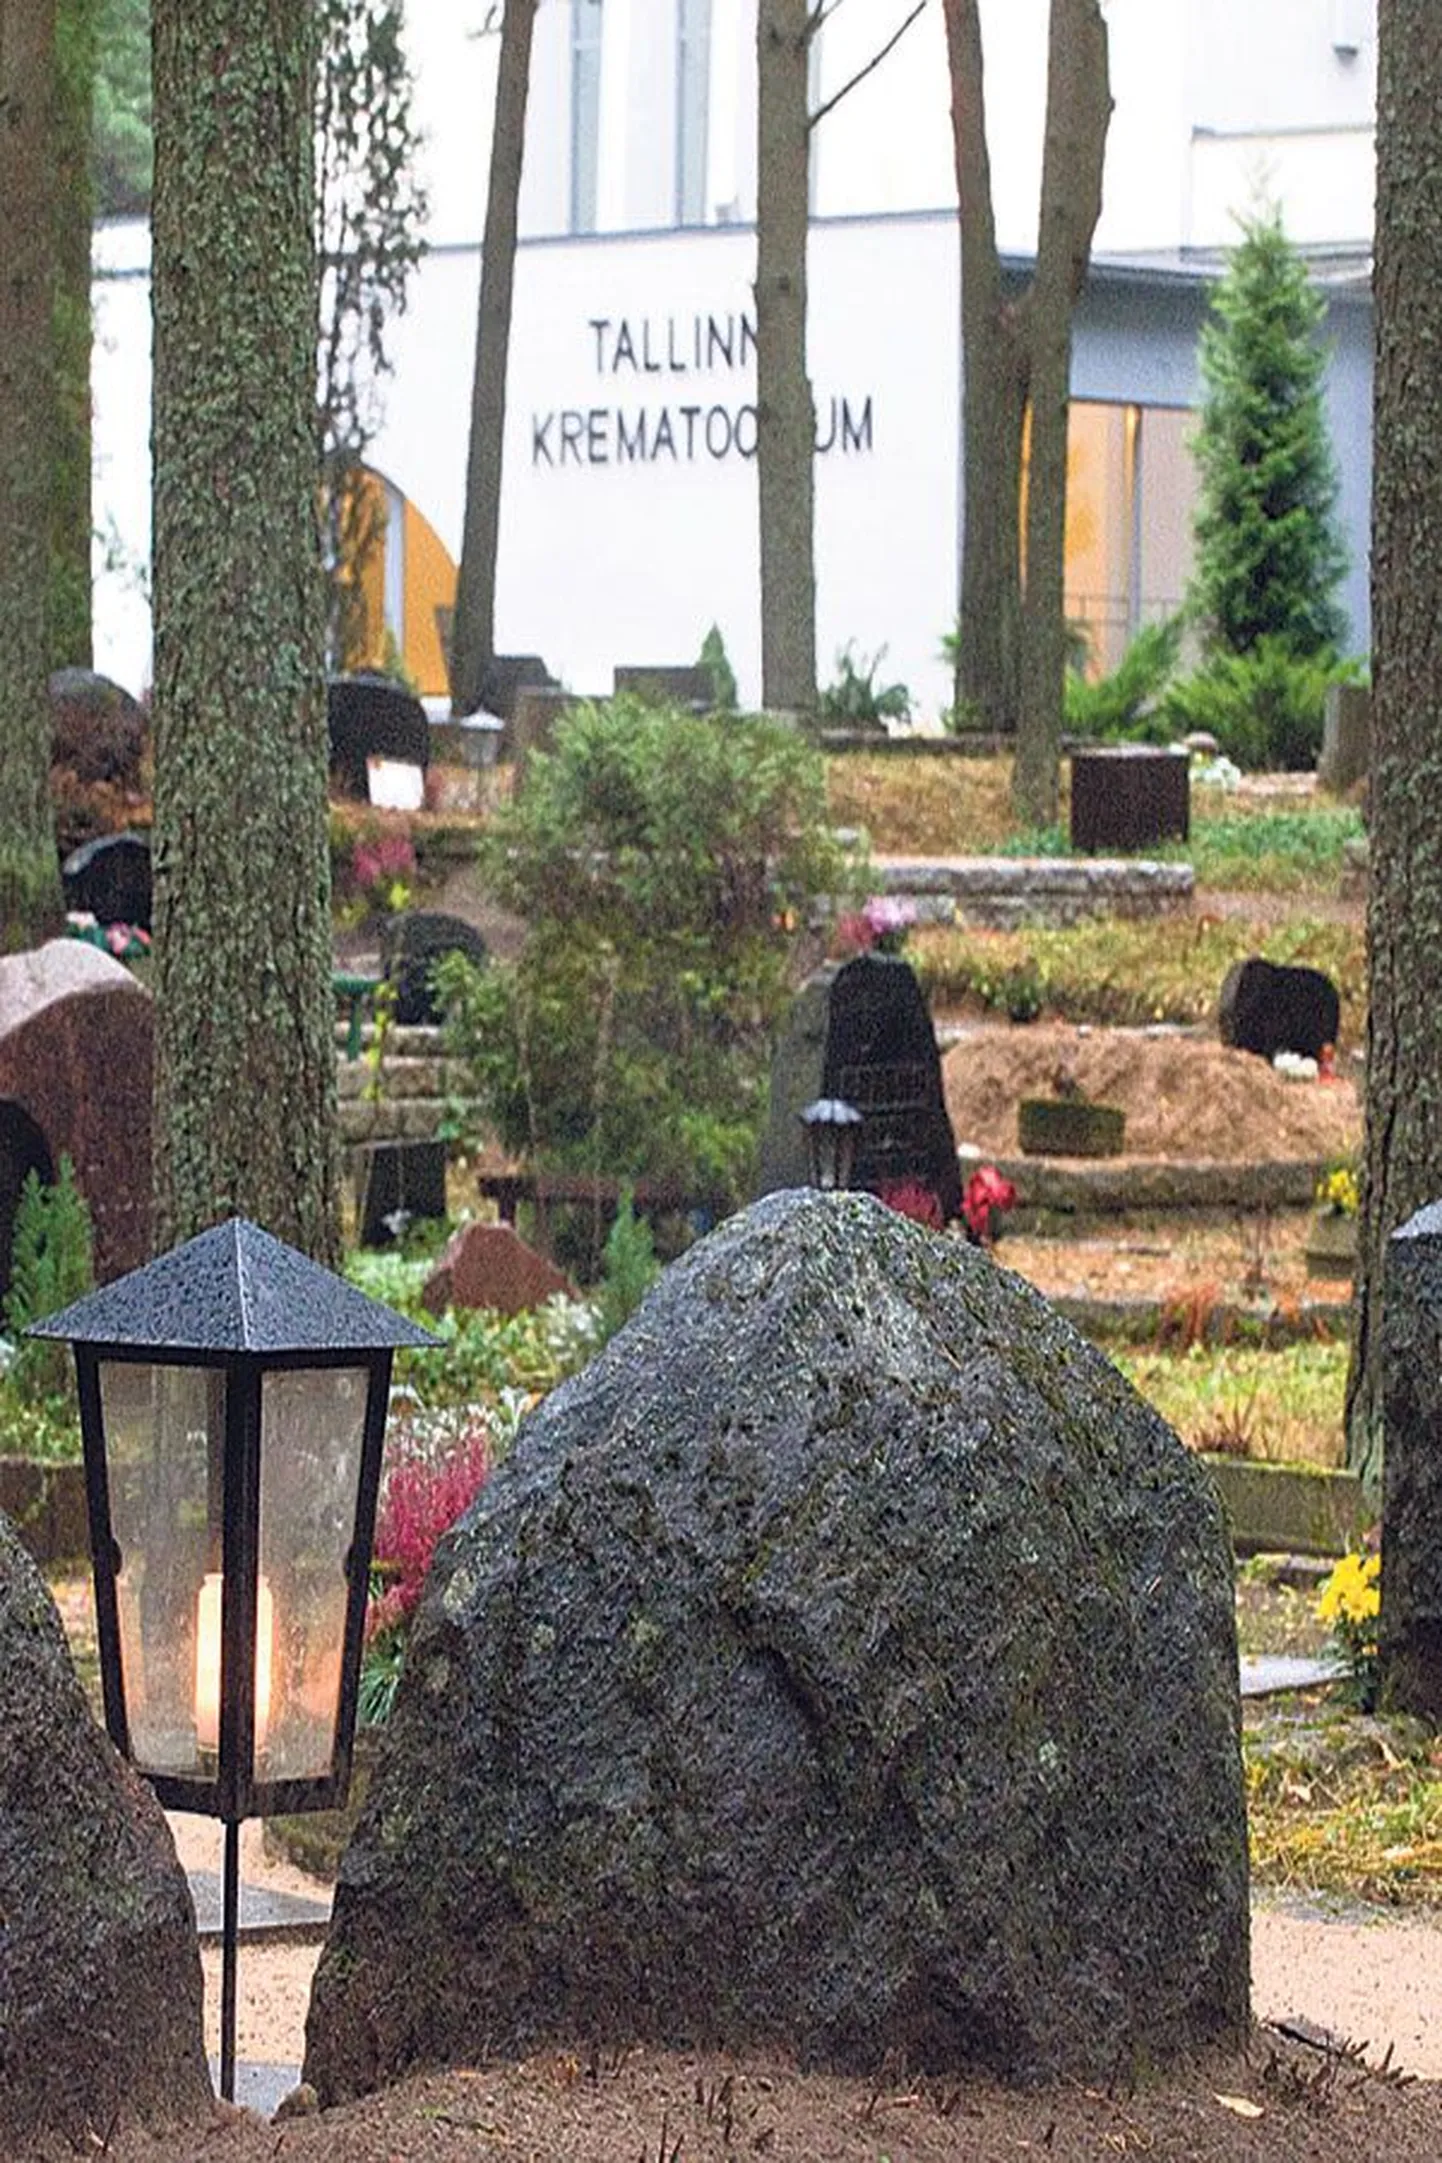 Могилы на кладбище Пярнамяэ около Таллиннского крематория.